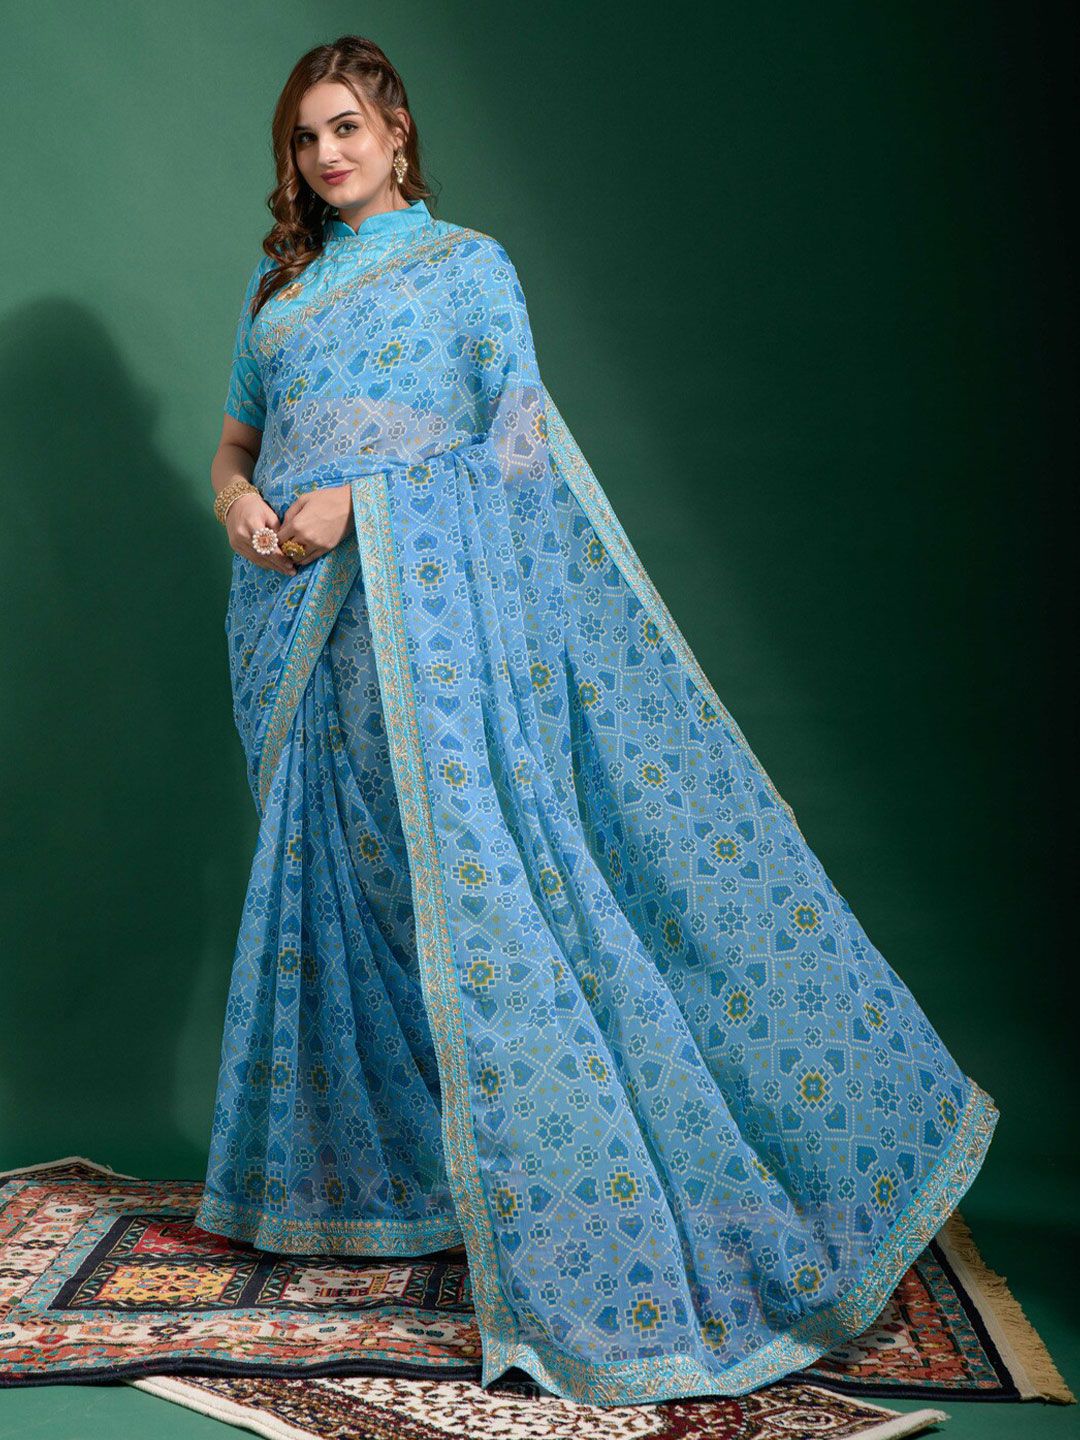 GAJARAI Blue & White Bandhani Poly Georgette Patola Saree Price in India